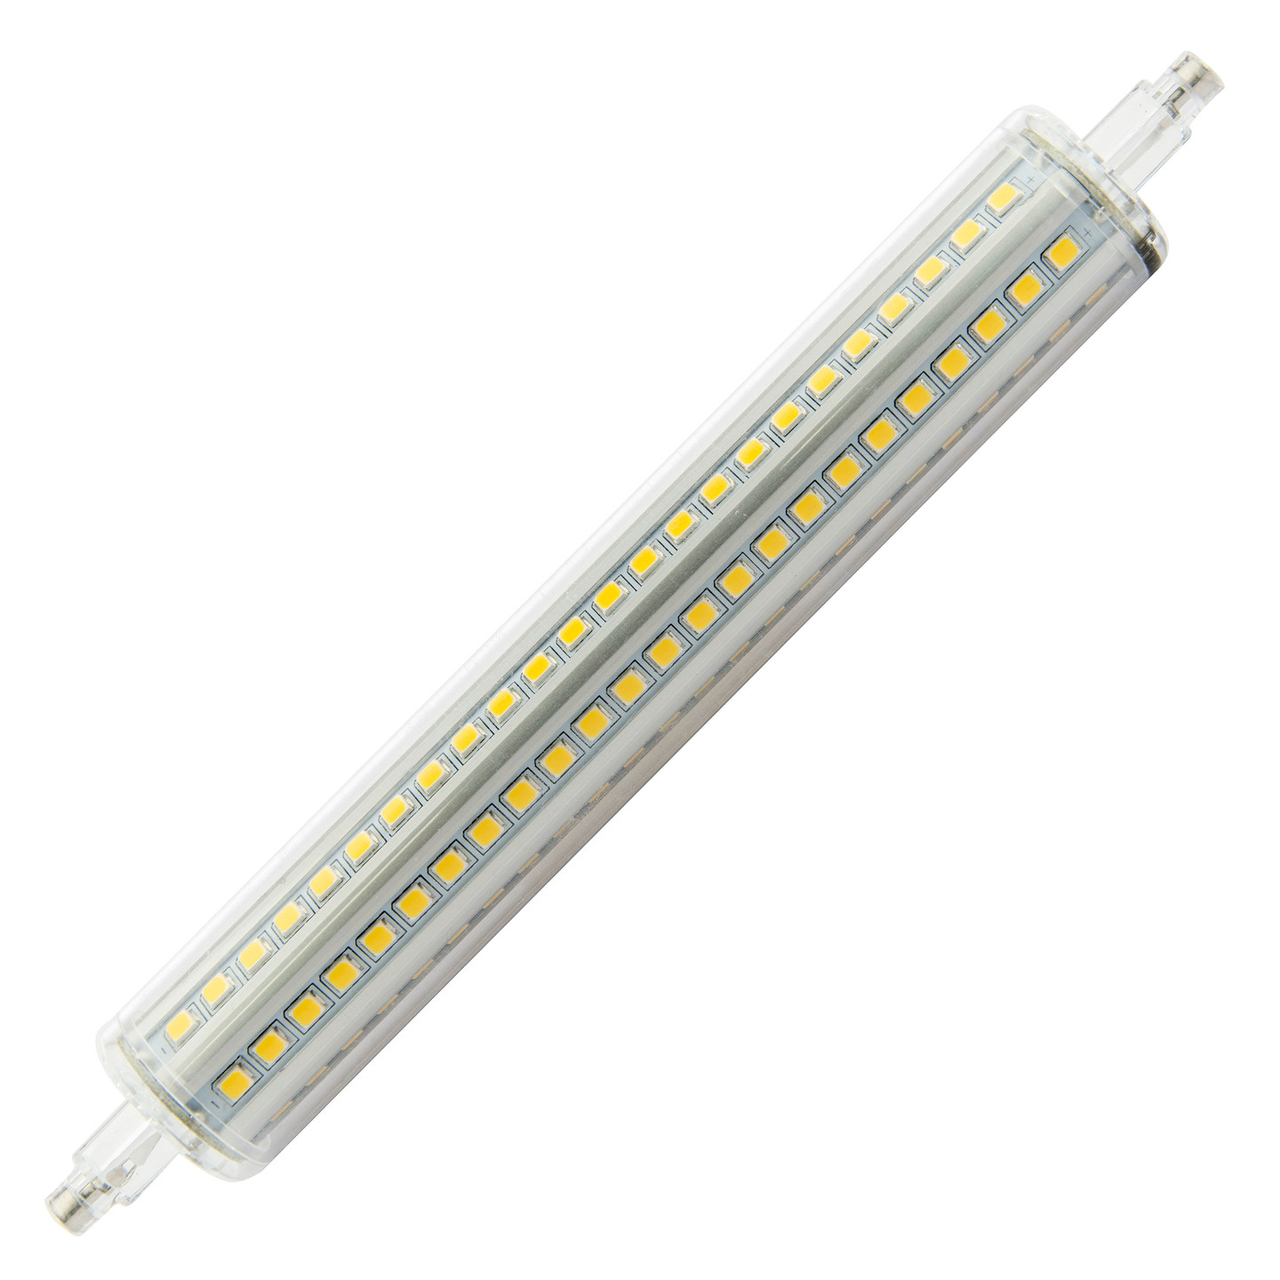 effect verwijderen Investeren R7S LED Lamp 12W Warm Wit 135mm Dimbaar - LED r7s dimbaar